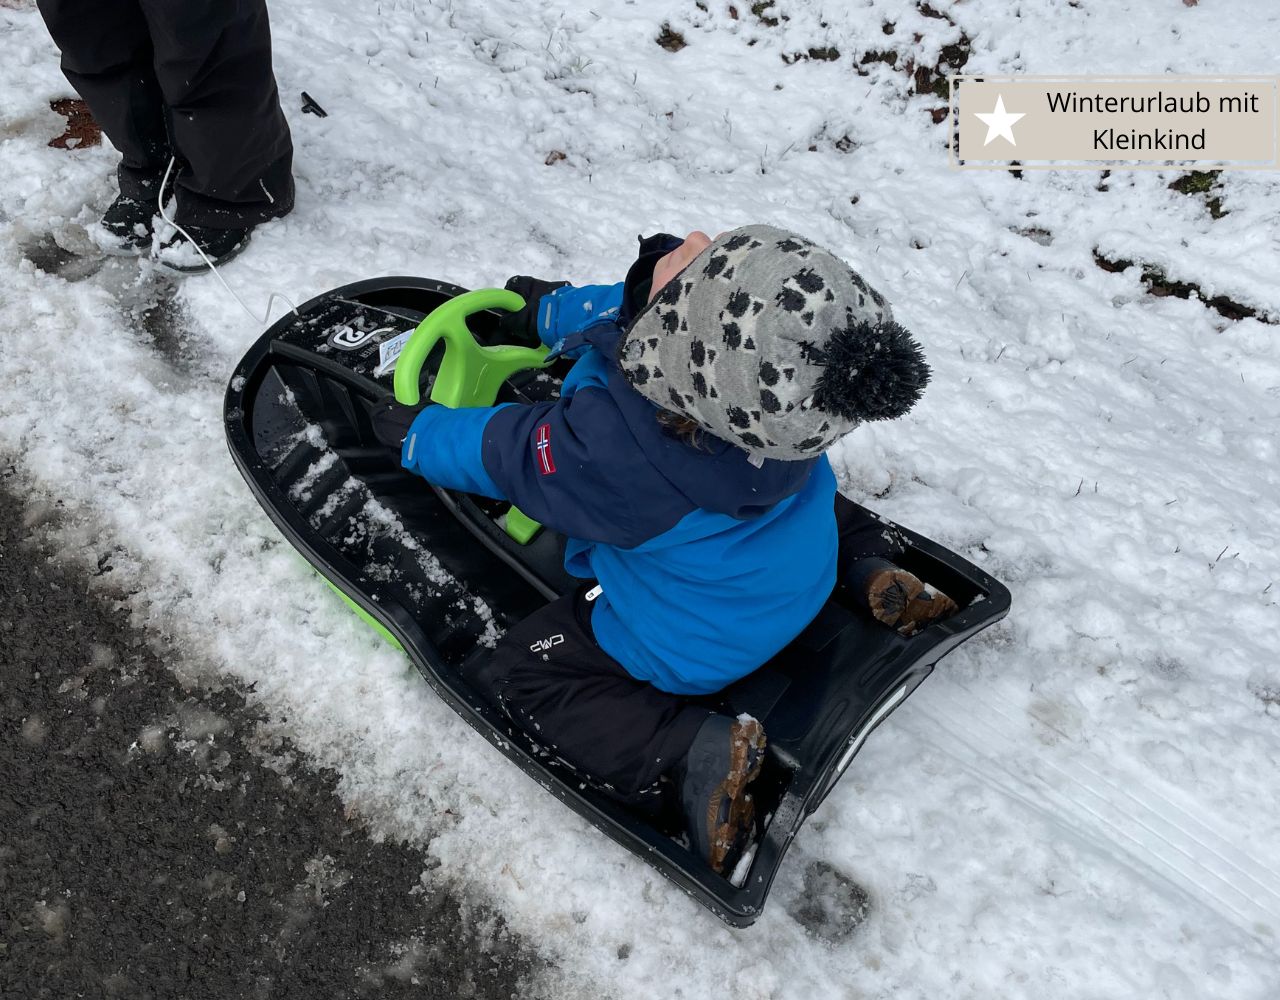 Winterurlaub mit Kleinkind in Deutschland im Schnee